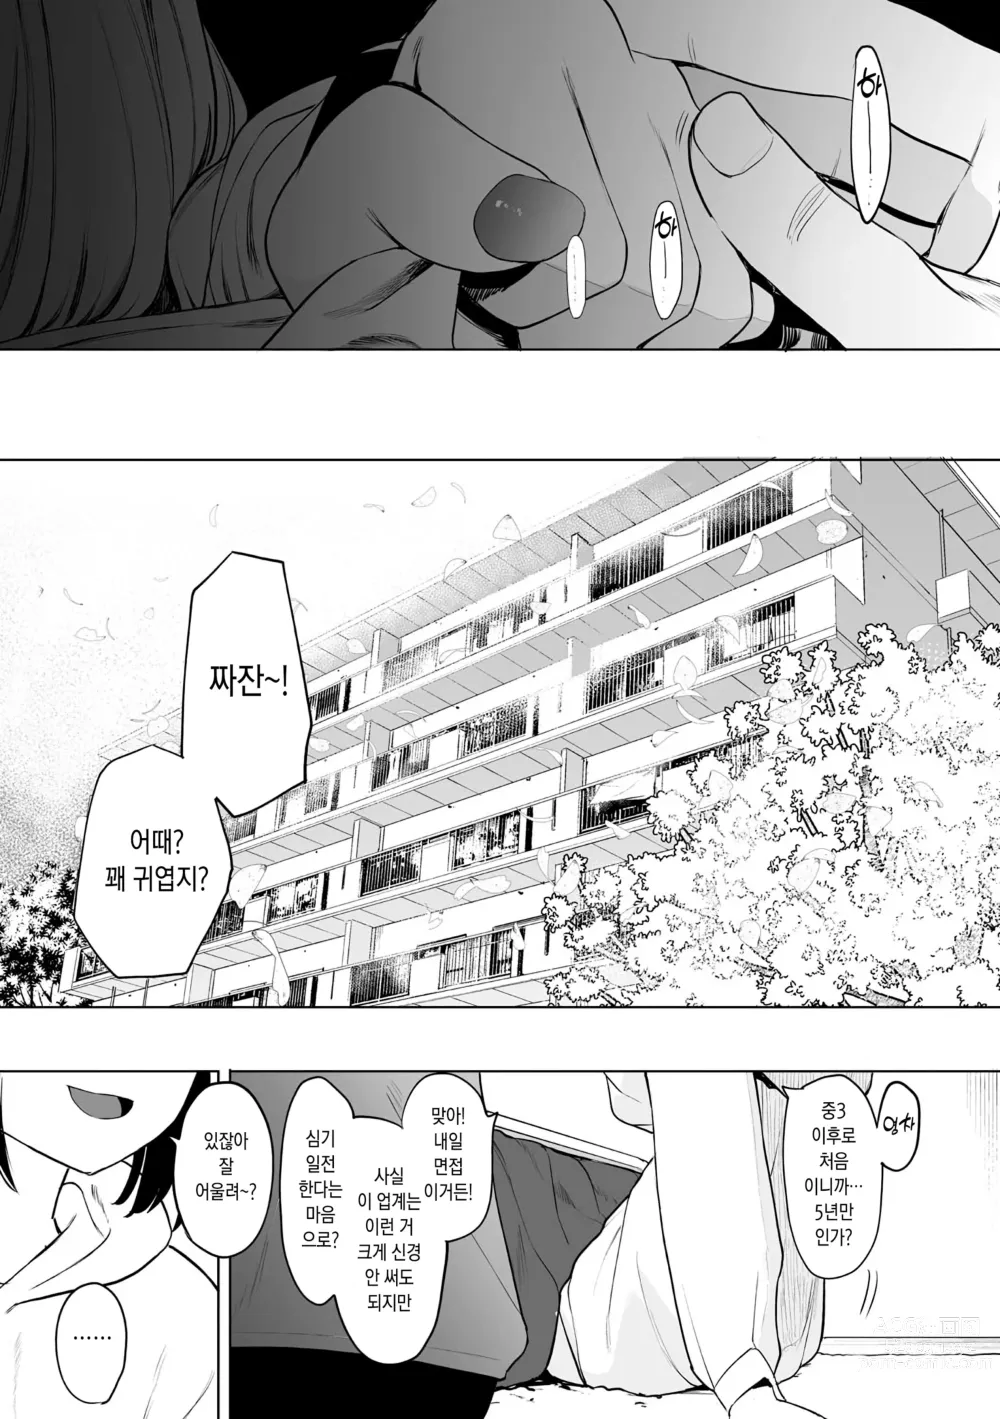 Page 204 of manga 에이트맨 선생님 덕분에 여친이 생겼습니다!